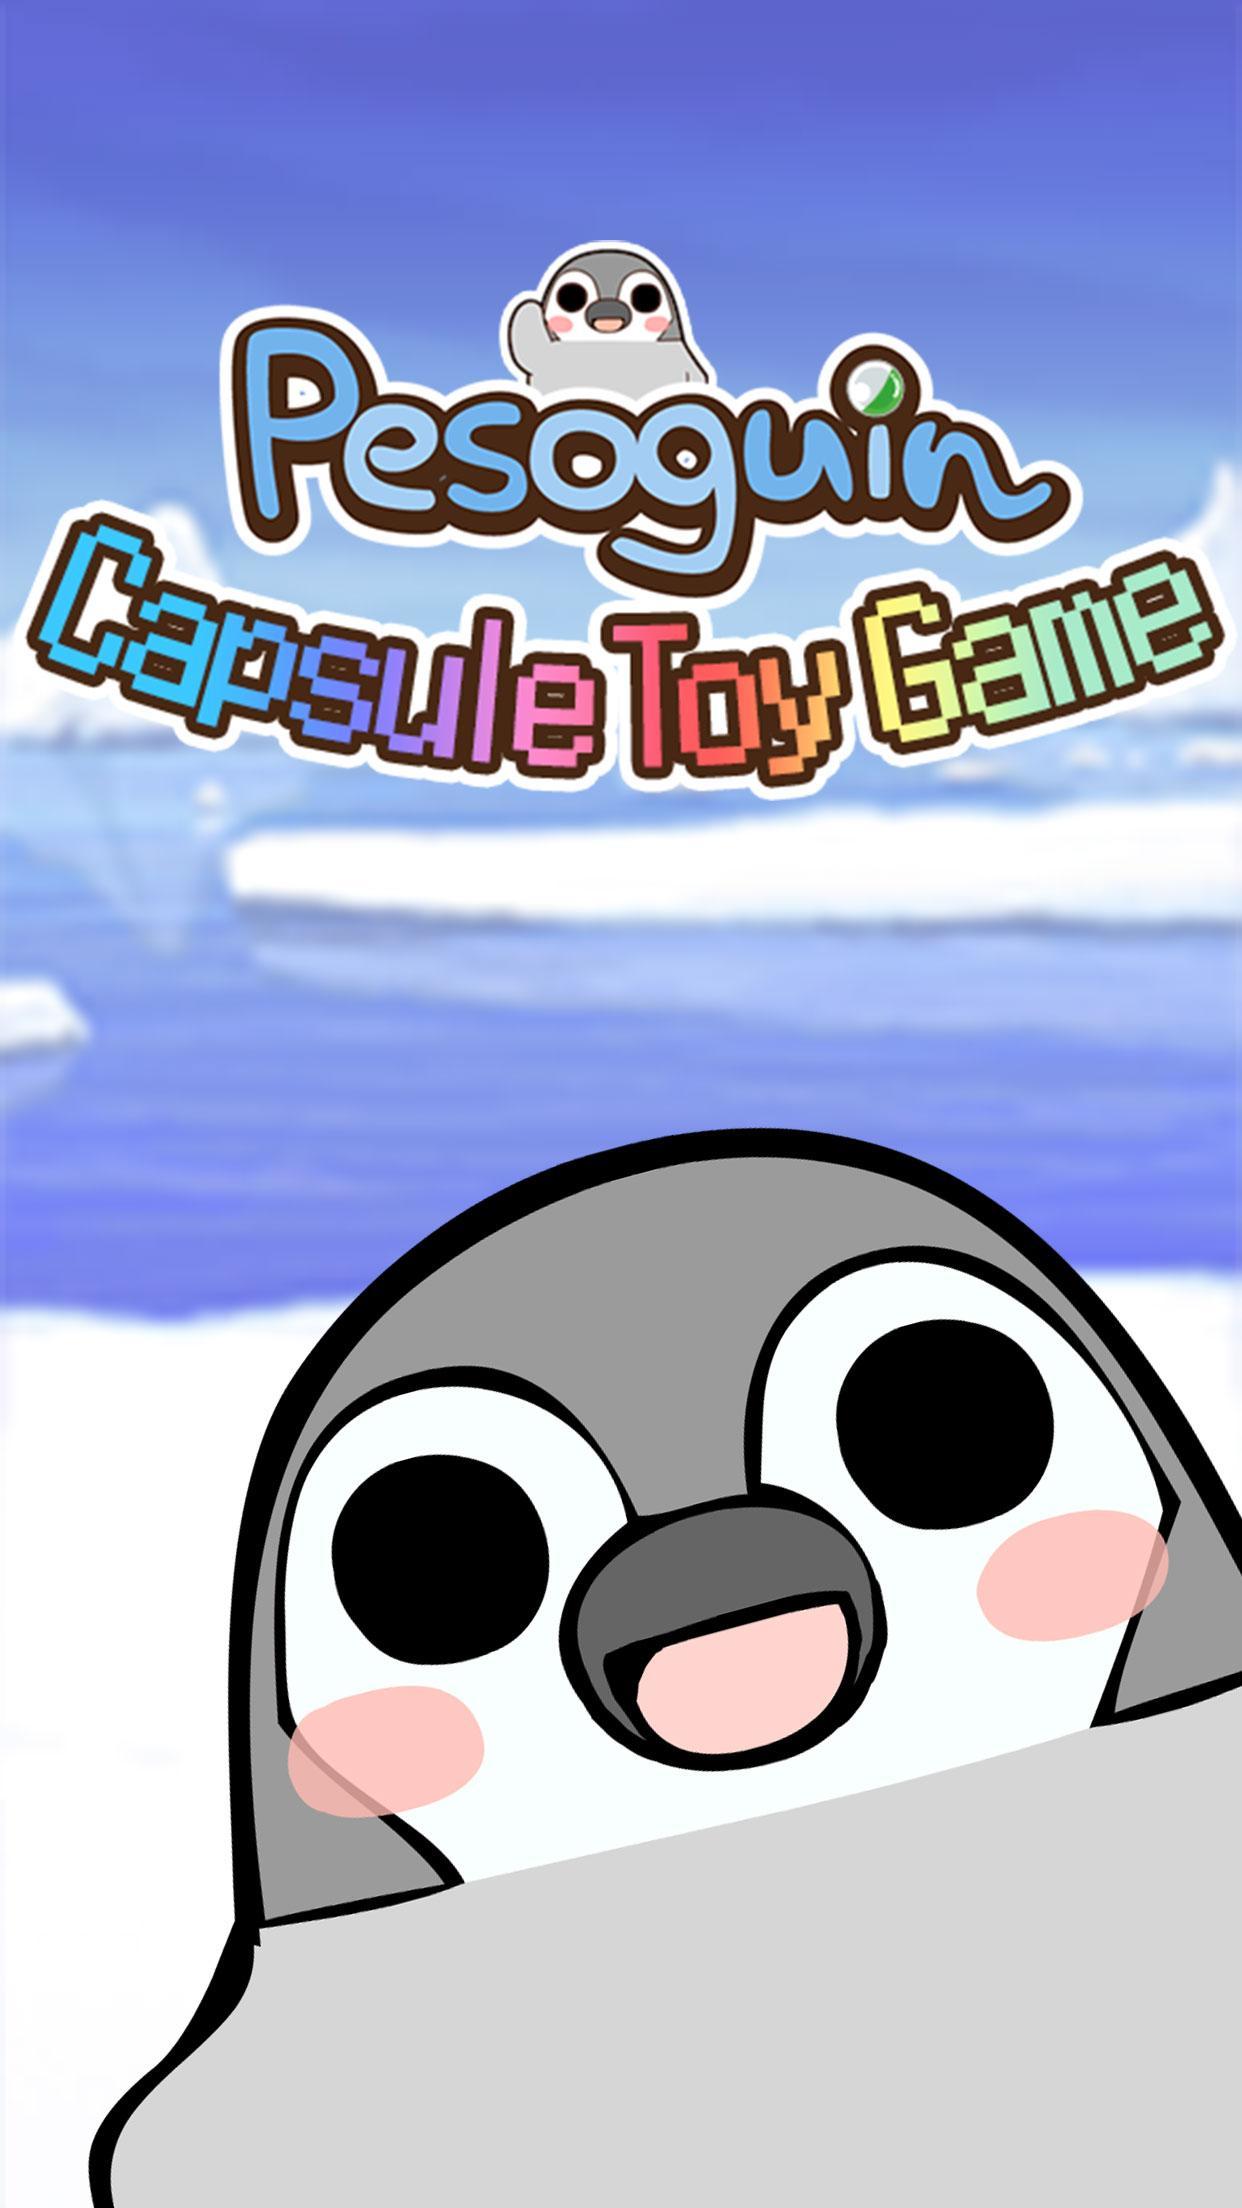 Pesoguin capsule toy game遊戲截圖